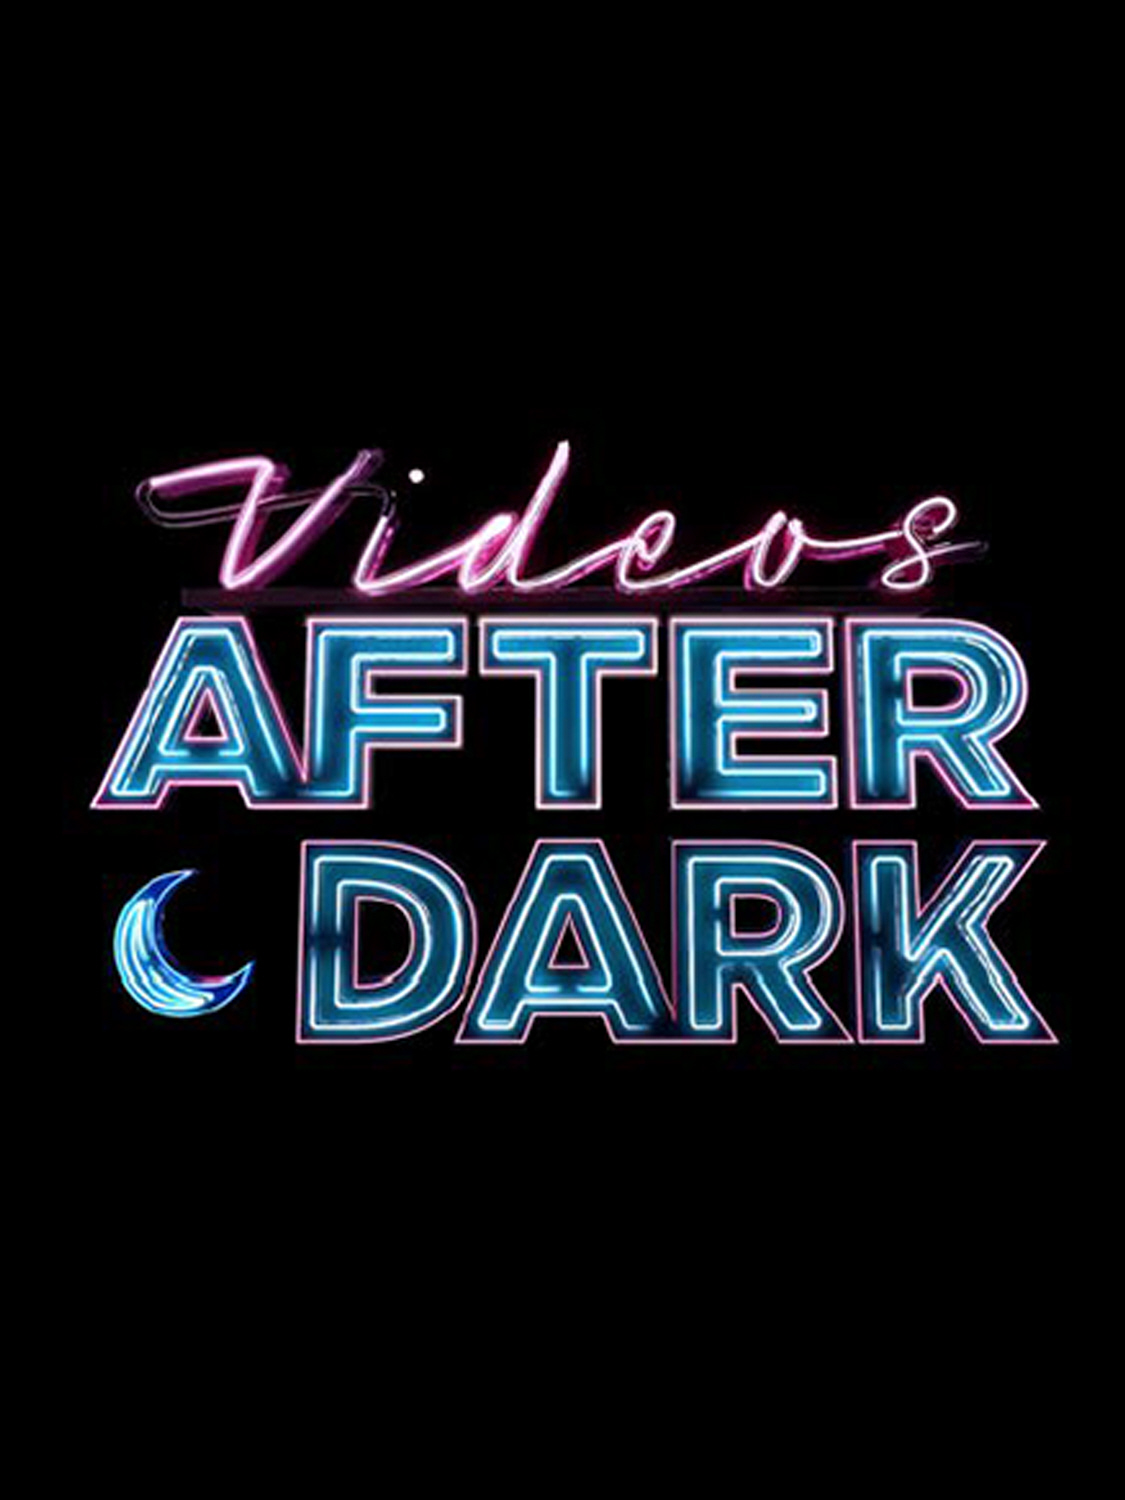 Best of Bet videos after dark